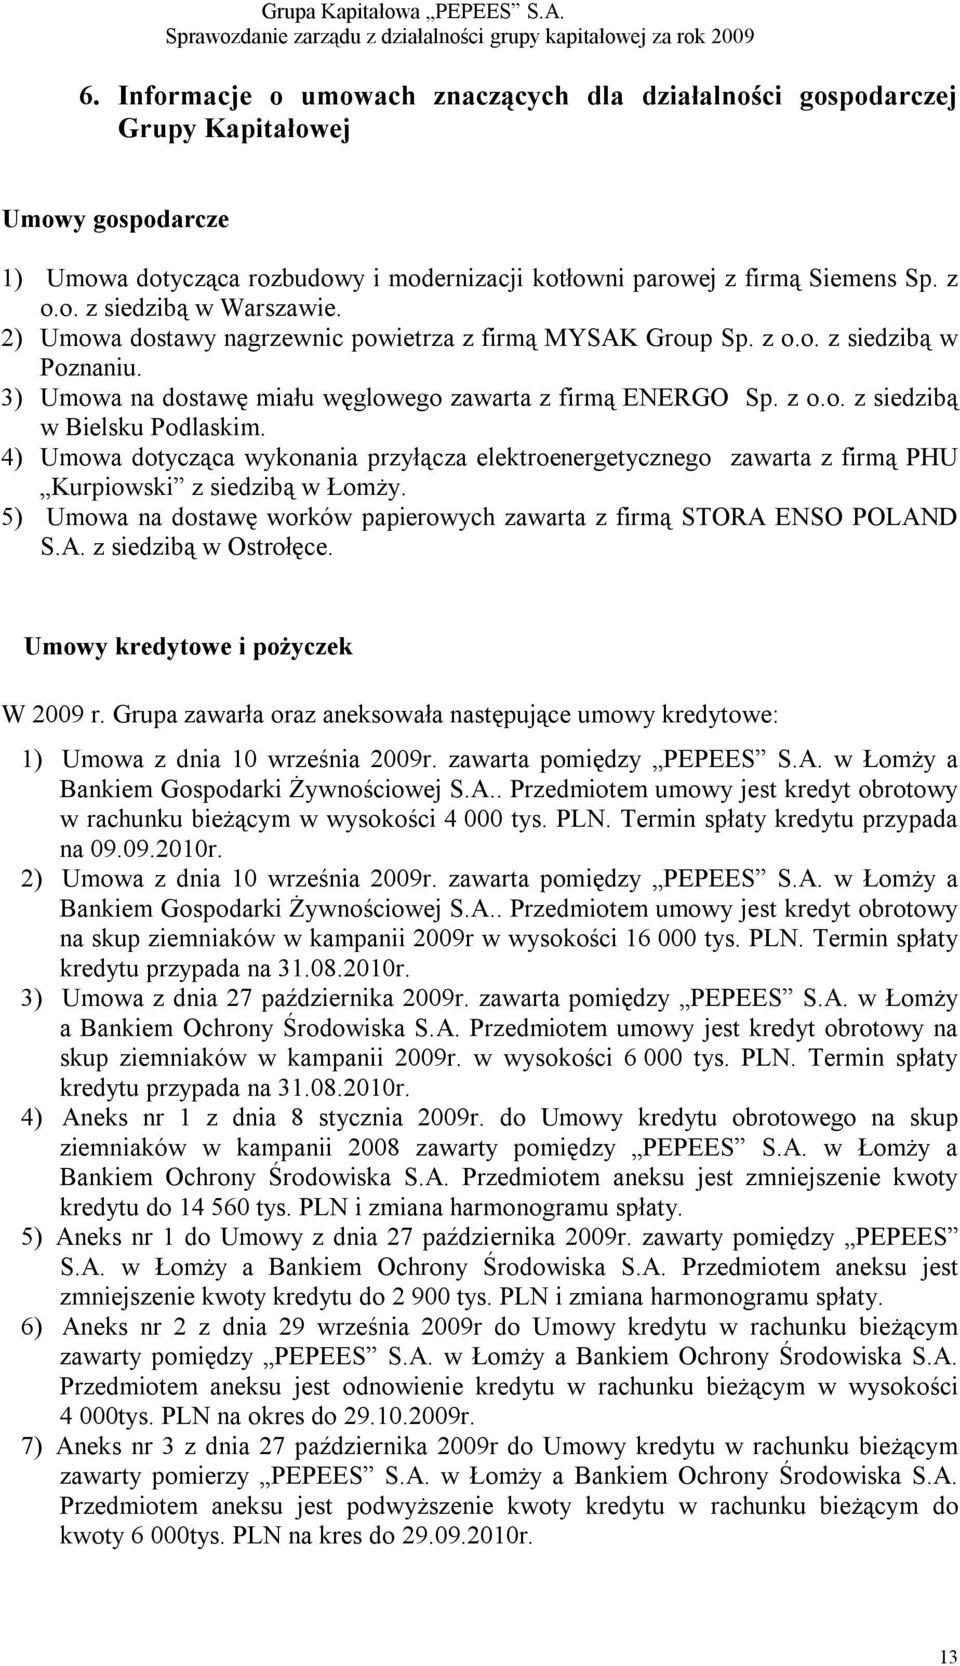 4) Umowa dotycząca wykonania przyłącza elektroenergetycznego zawarta z firmą PHU Kurpiowski z siedzibą w Łomży. 5) Umowa na dostawę worków papierowych zawarta z firmą STORA ENSO POLAND S.A. z siedzibą w Ostrołęce.